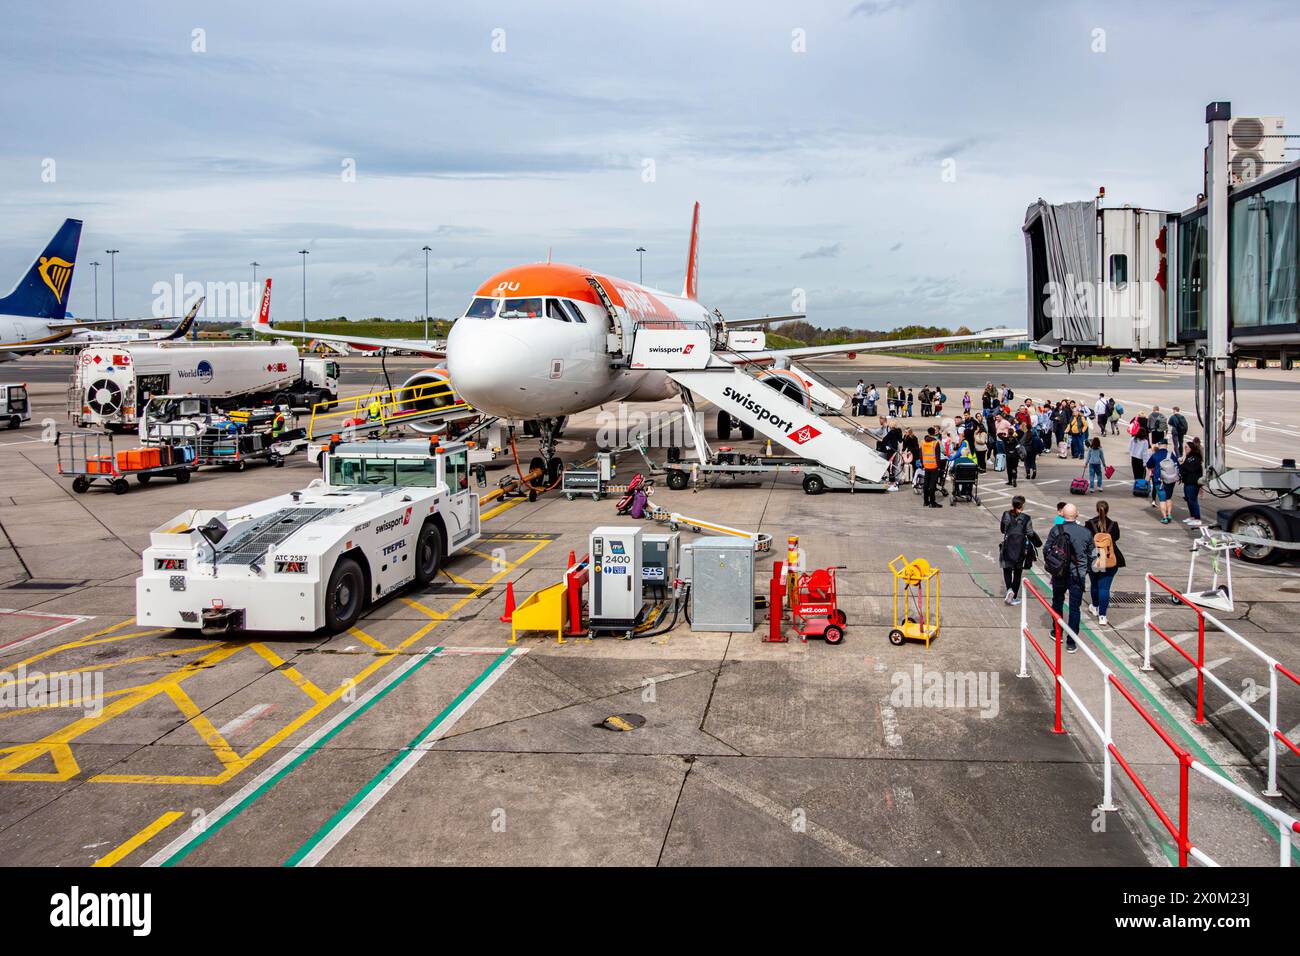 Passeggeri a bordo di un aereo easyJet all'aeroporto internazionale di Birmingham Foto Stock